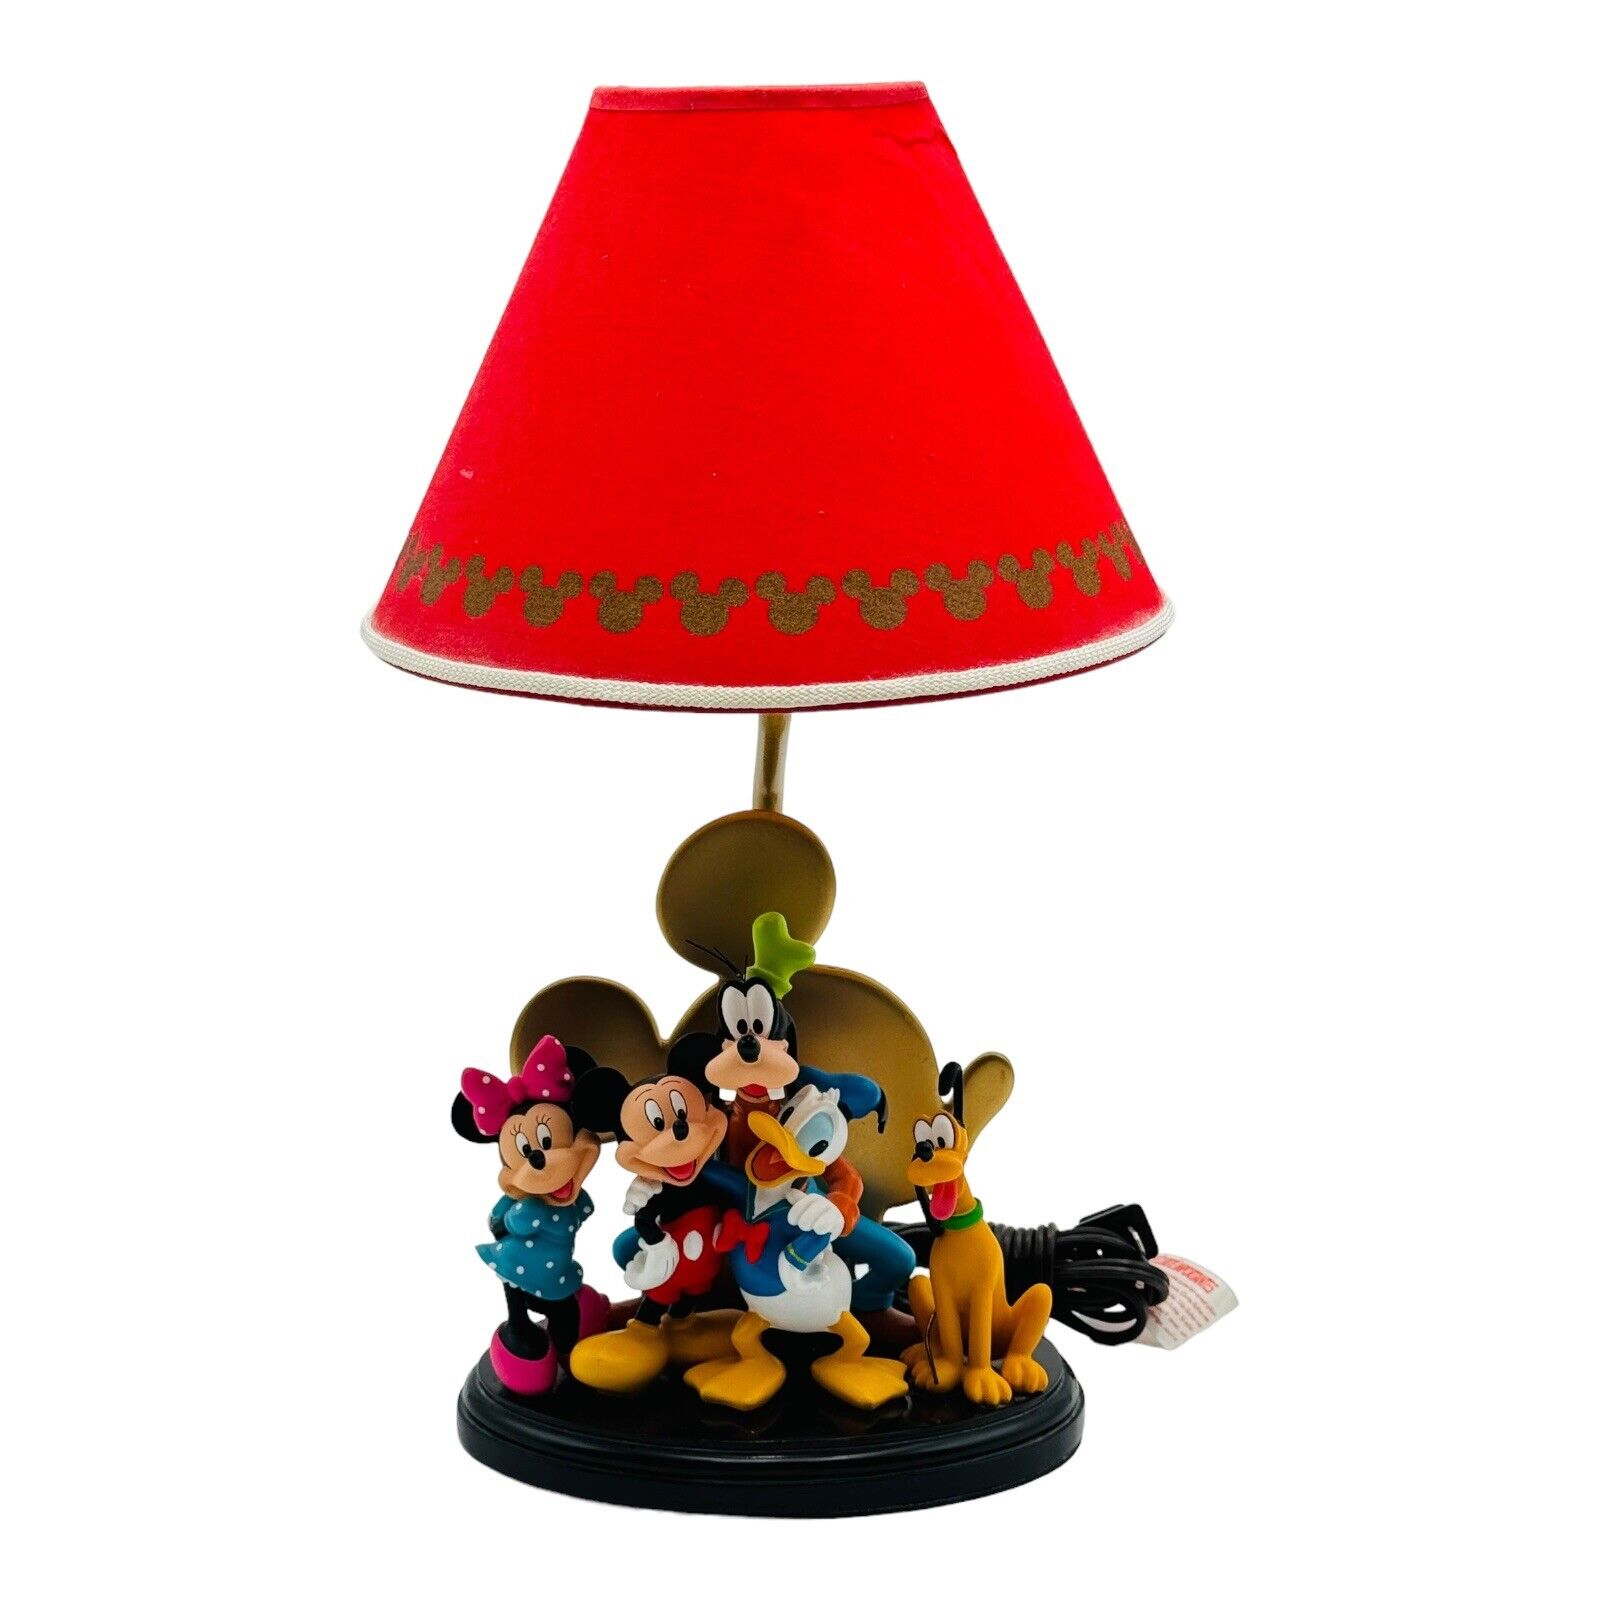 Disney Mickey's Magic Of Friendship Lamp Goofy Donald Duck Daisy Minnie RARE